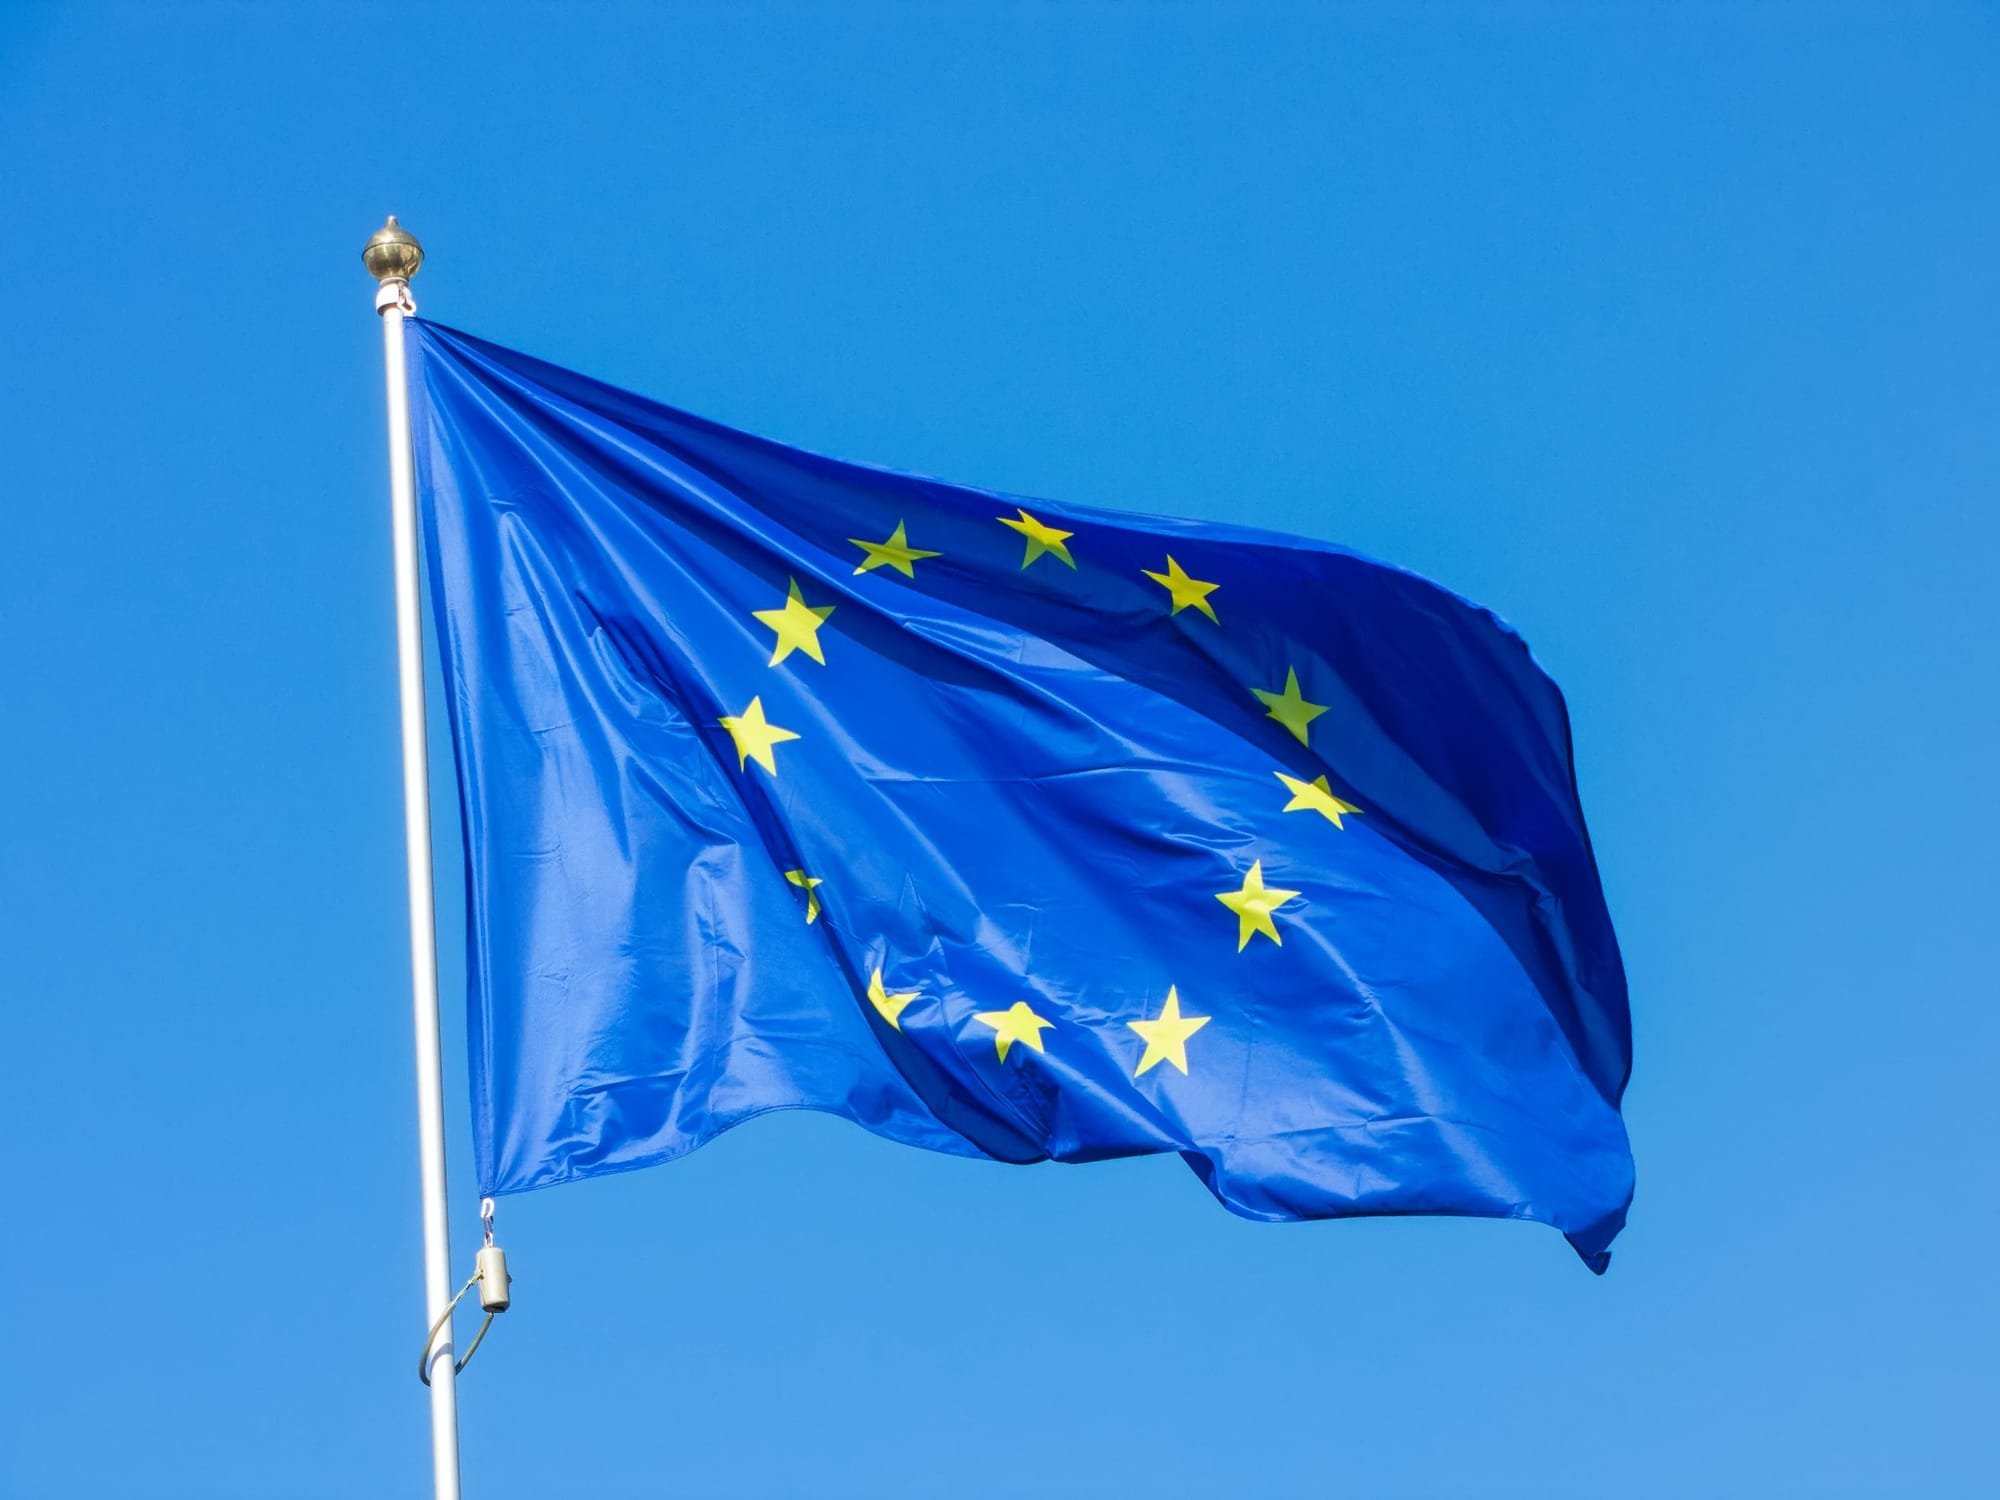 Înregistrare marcă Europeană (EUIPO)